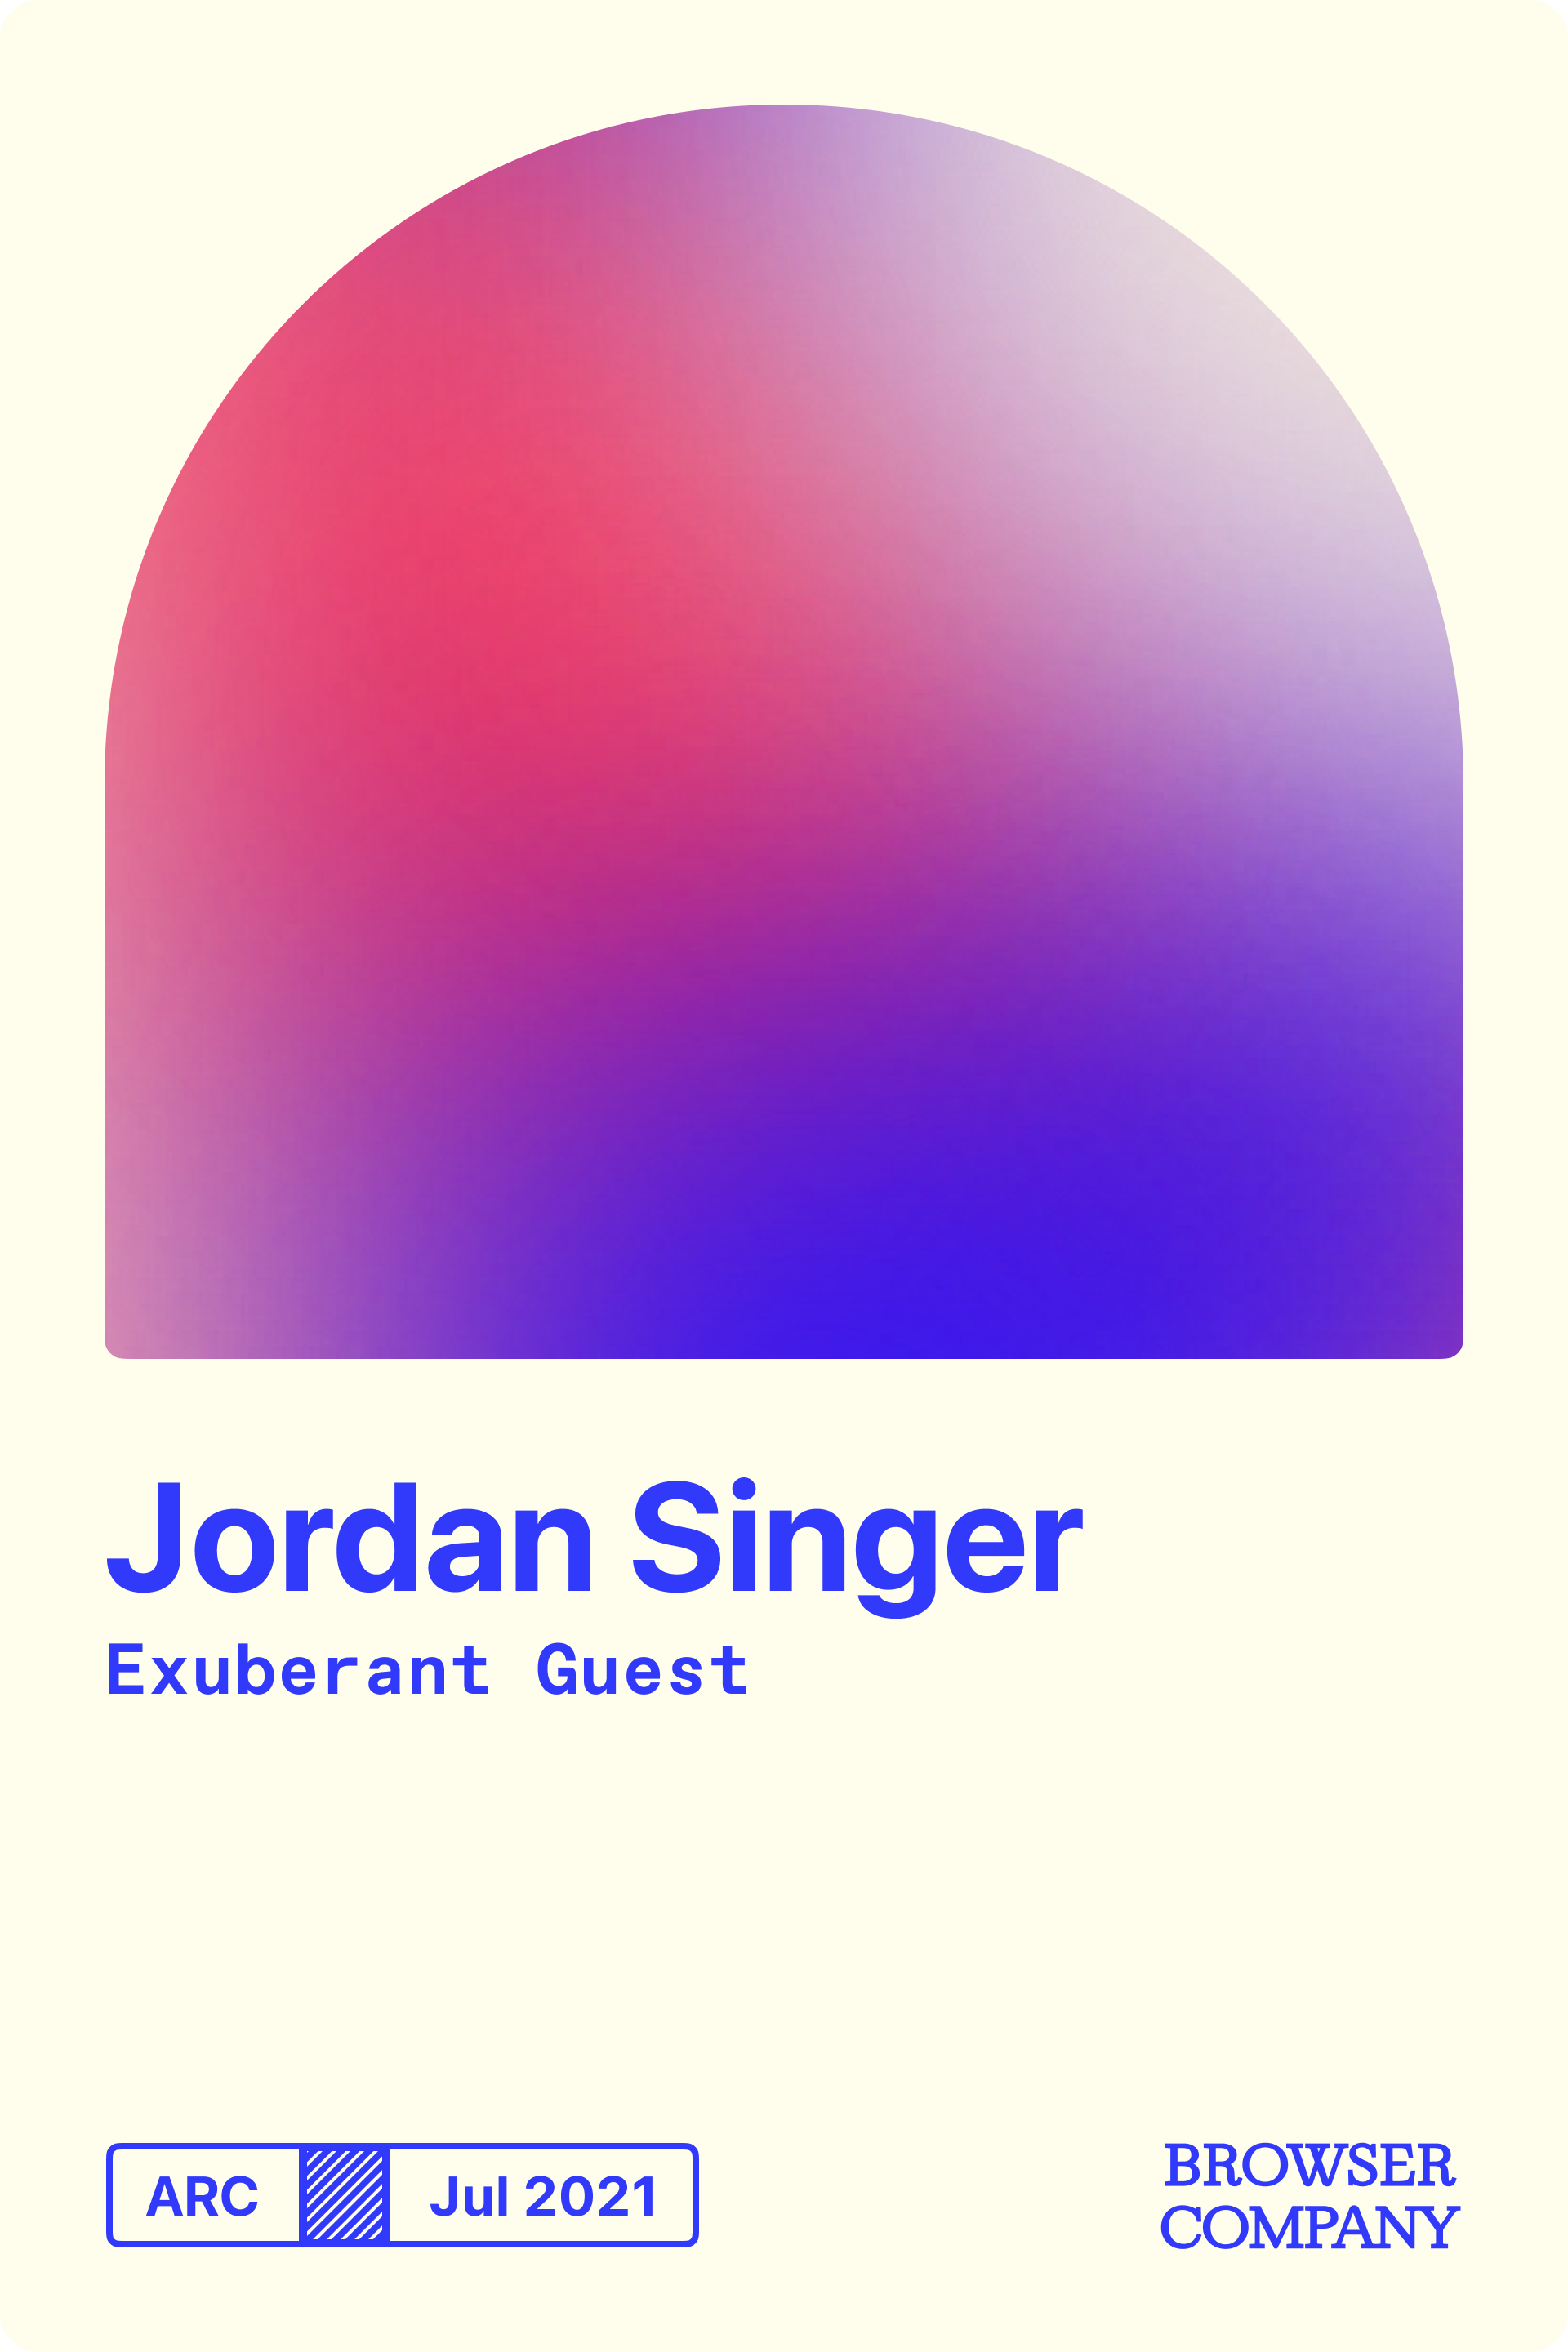 Jordan Singer's Member Card